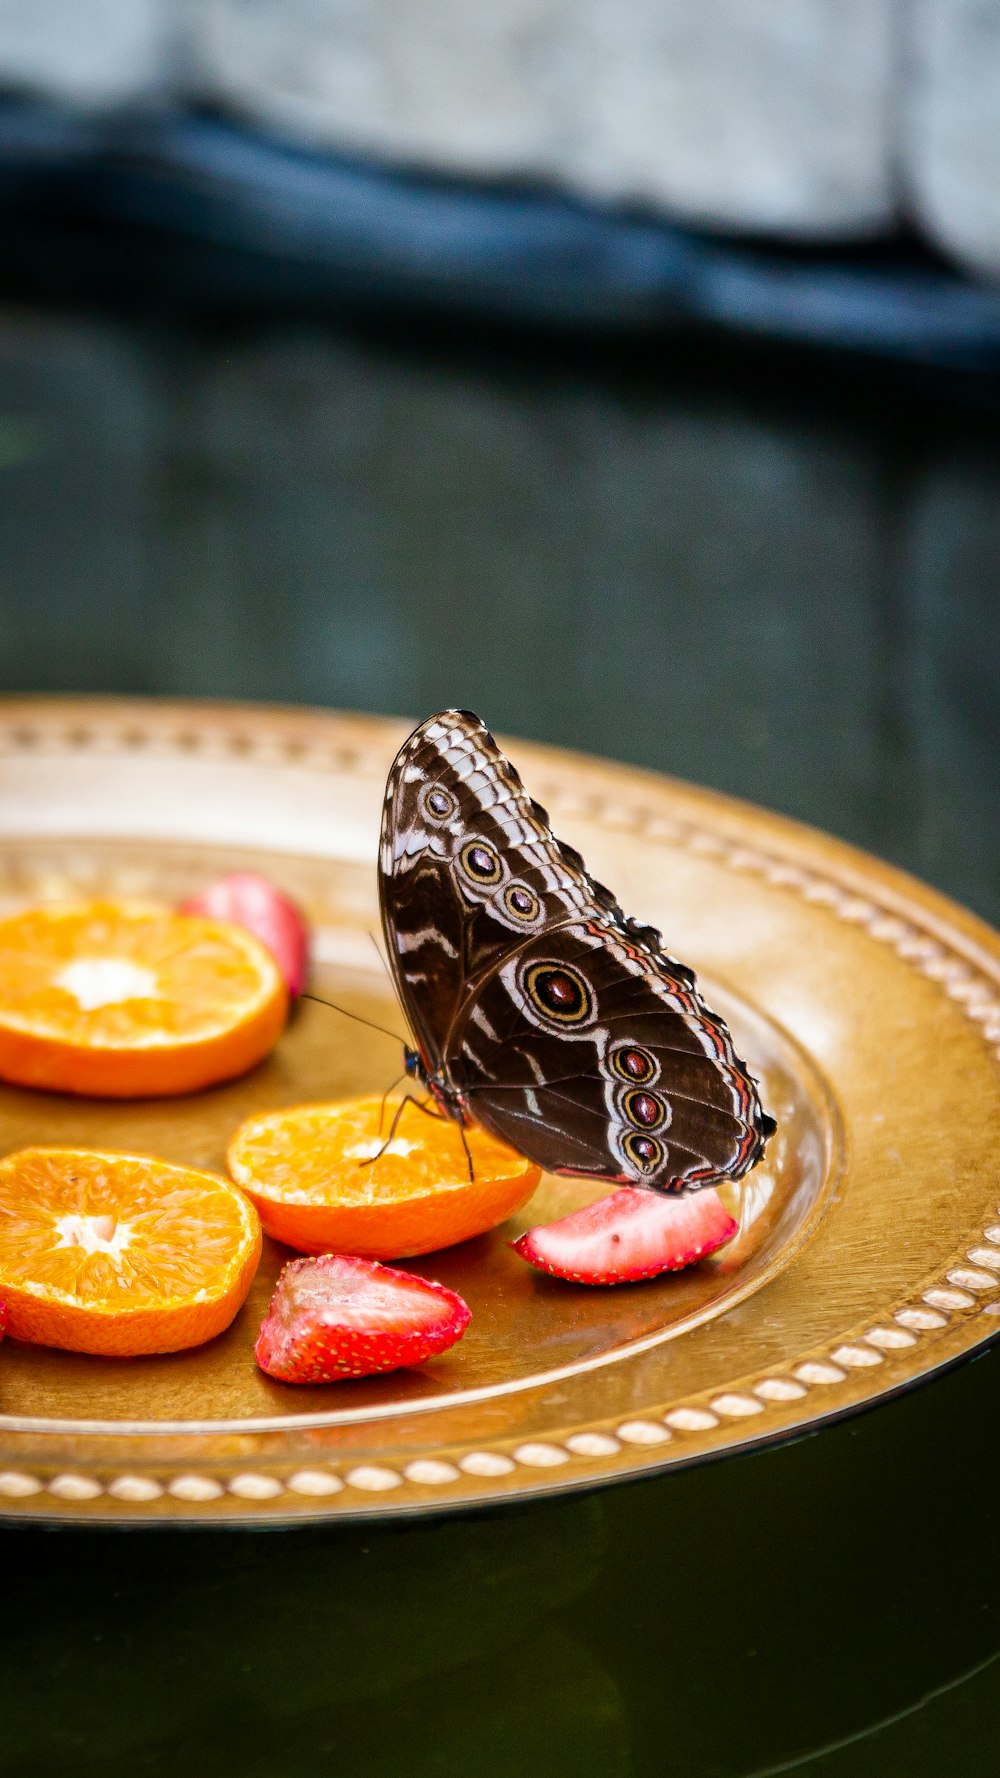 Ein Schmetterling sitzt auf einem Obstteller